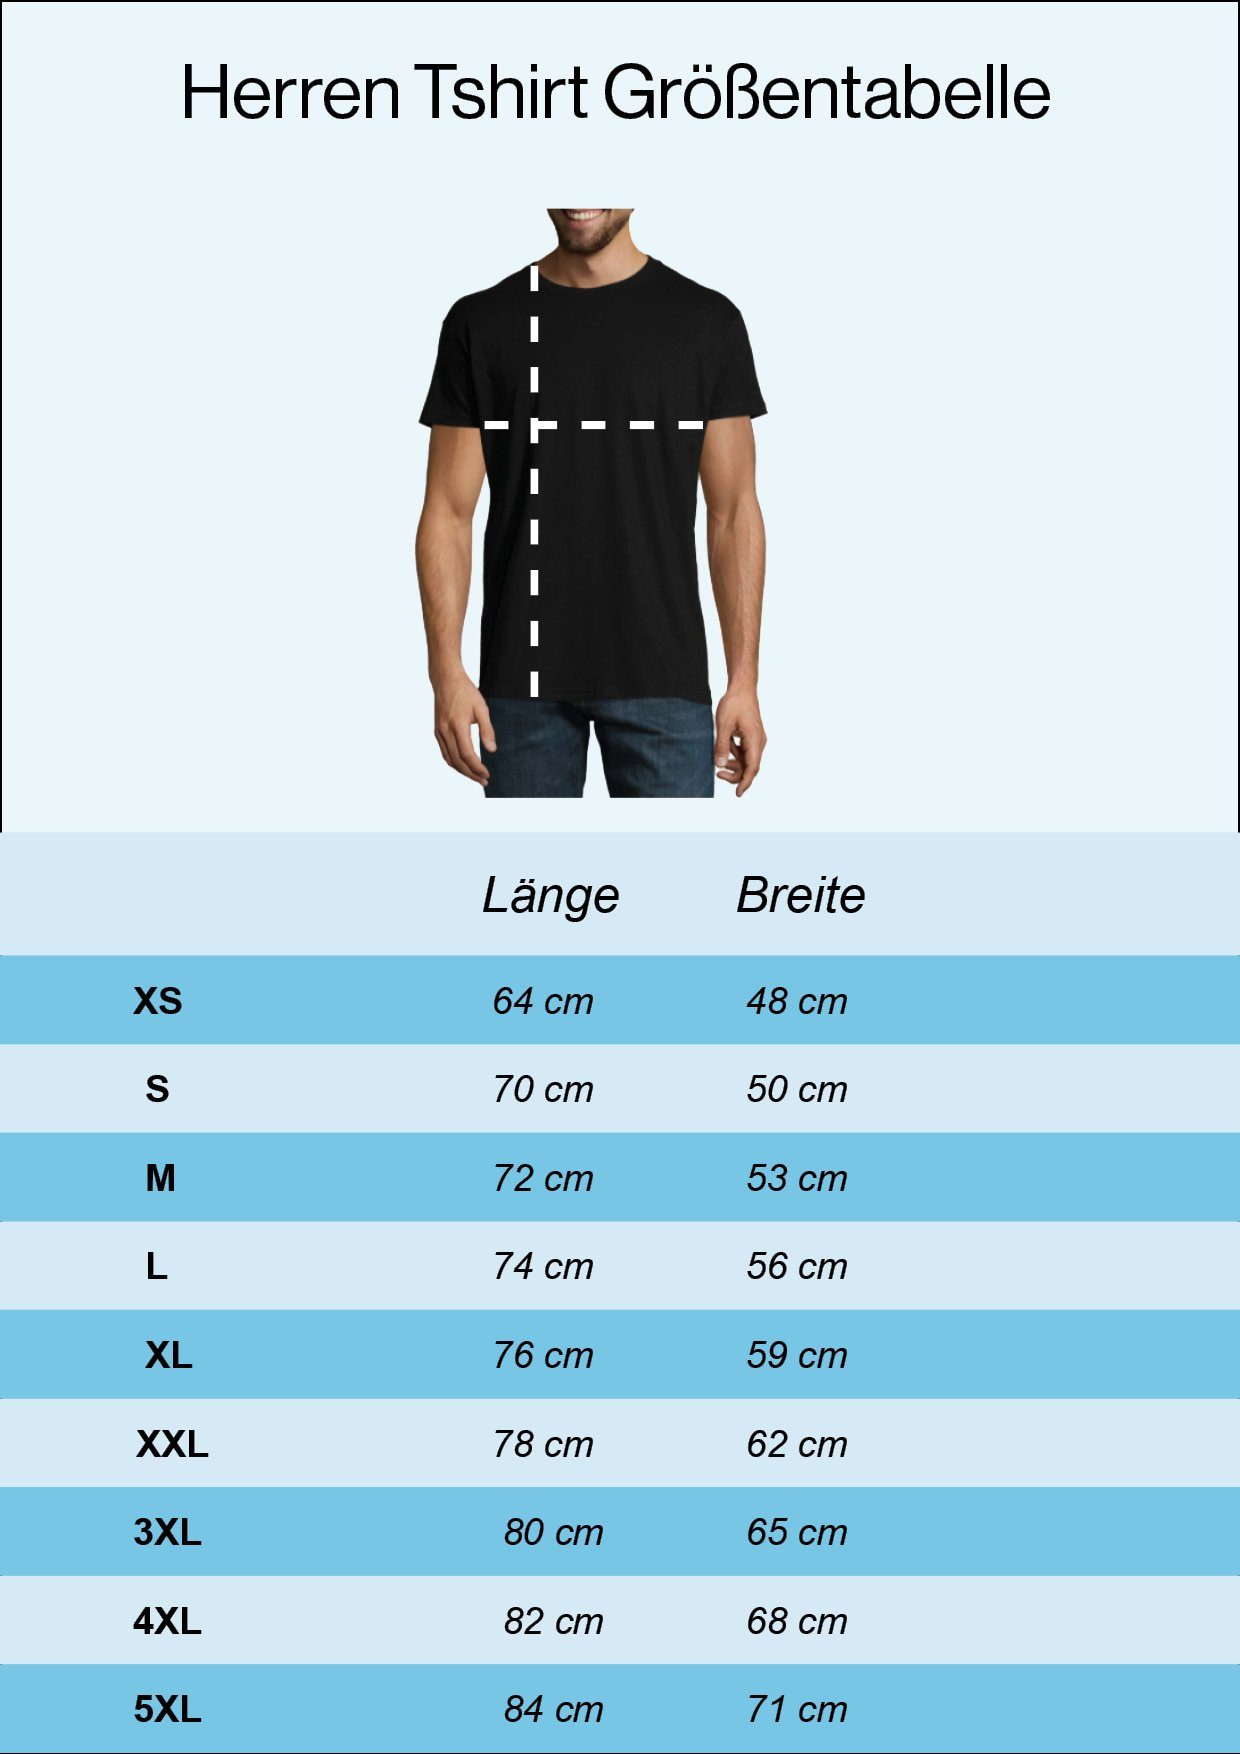 mit Frontprint Youth Therapie Boxen Navyblau T-Shirt trendigem Is Shirt My Designz Herren